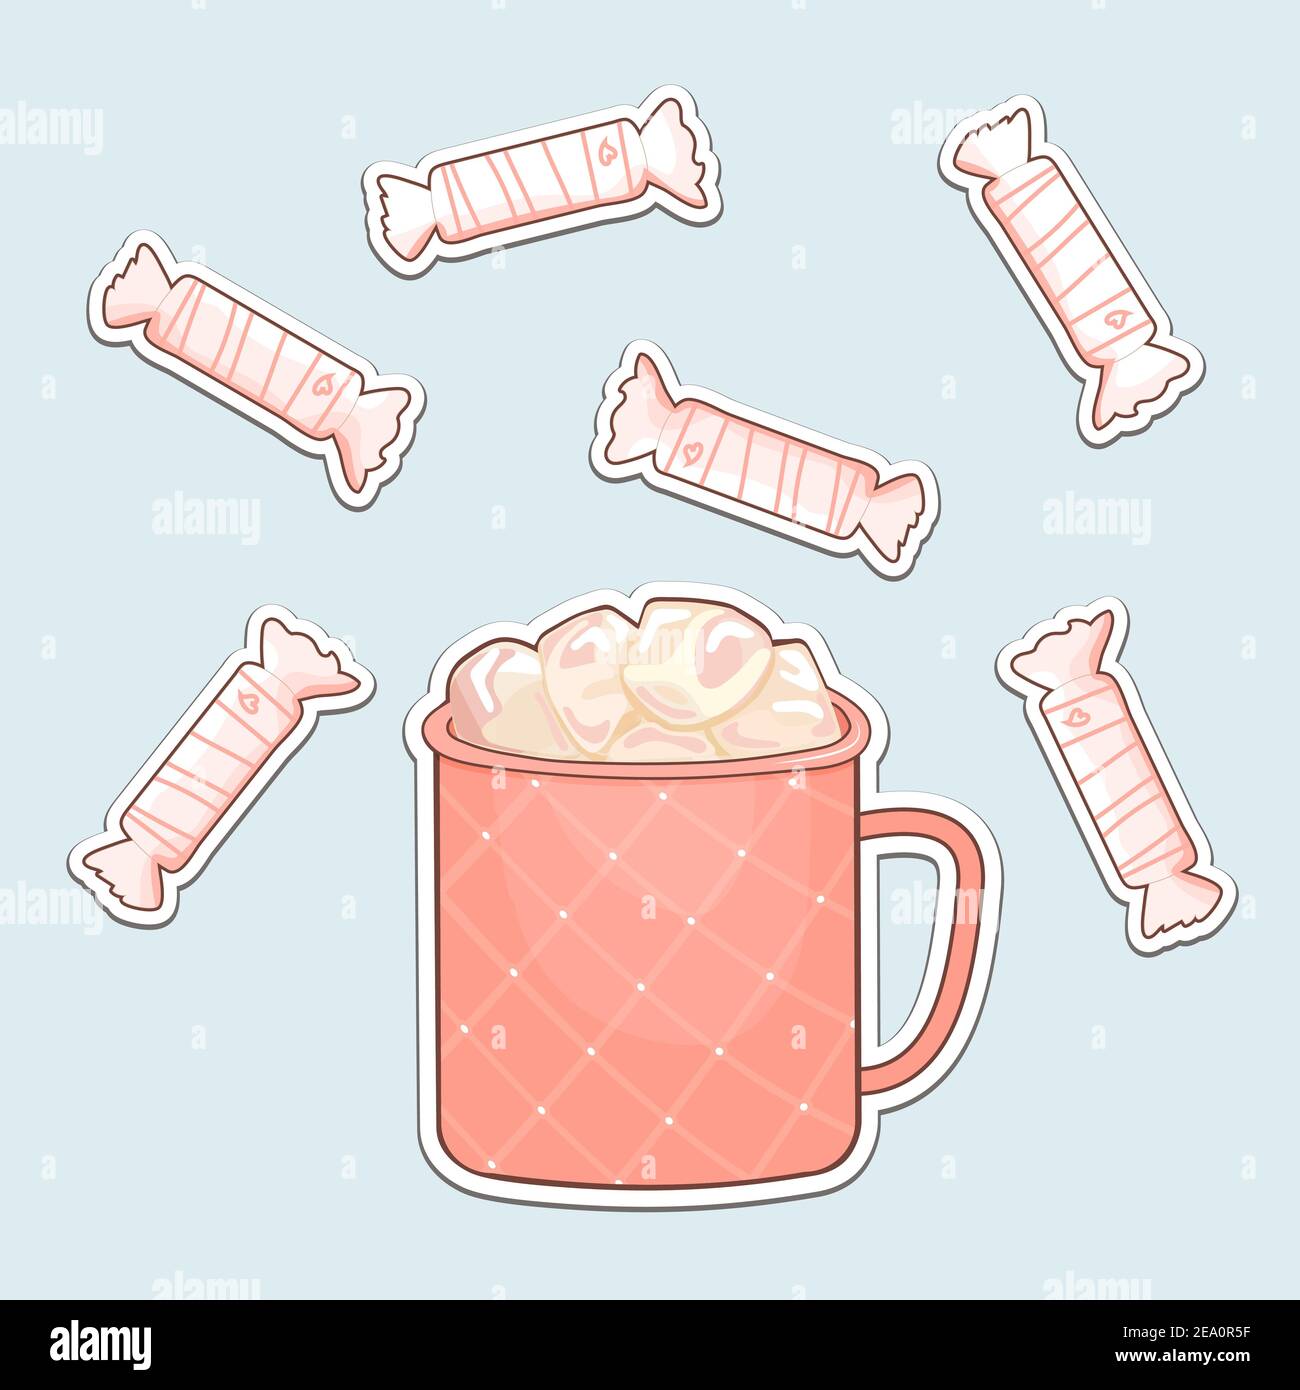 Cadre vectoriel blanc bonbons plats isolés avec coeurs, tasse à motifs roses de café chaud ou chocolat et guimauves de dessins animés sur fond bleu pour Illustration de Vecteur